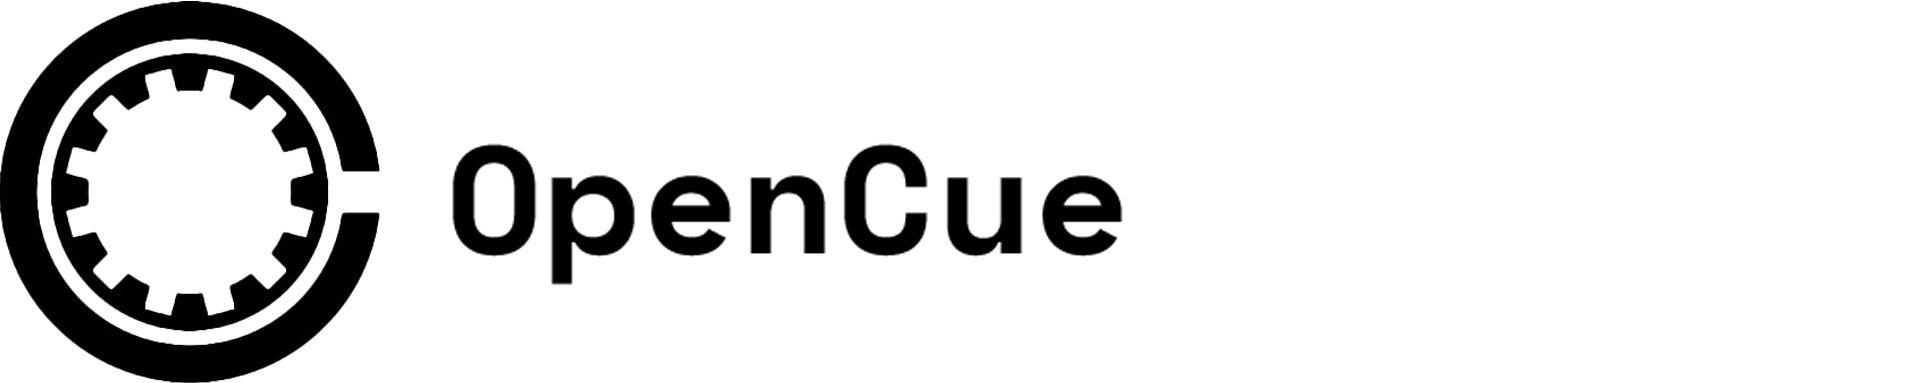 opencue logo